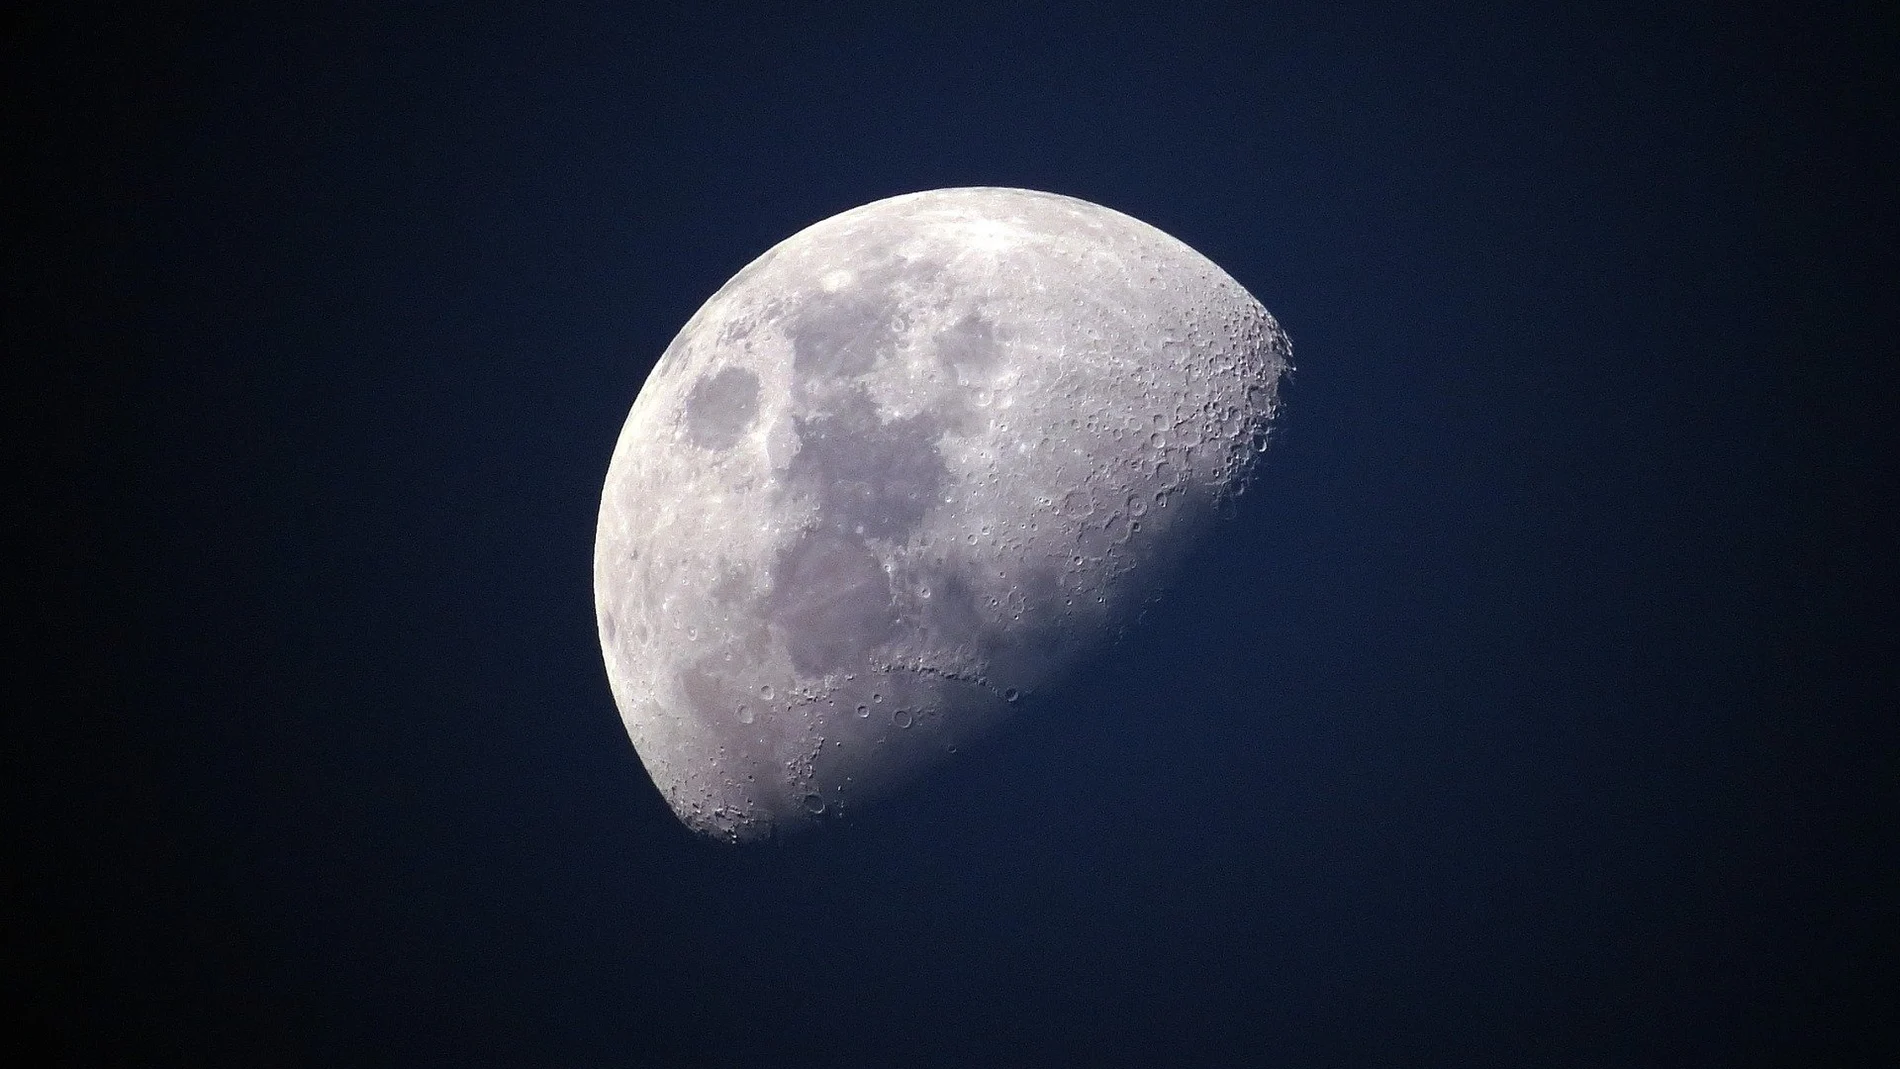 Calendario lunar de mayo 2021: Las fases de la luna este mes